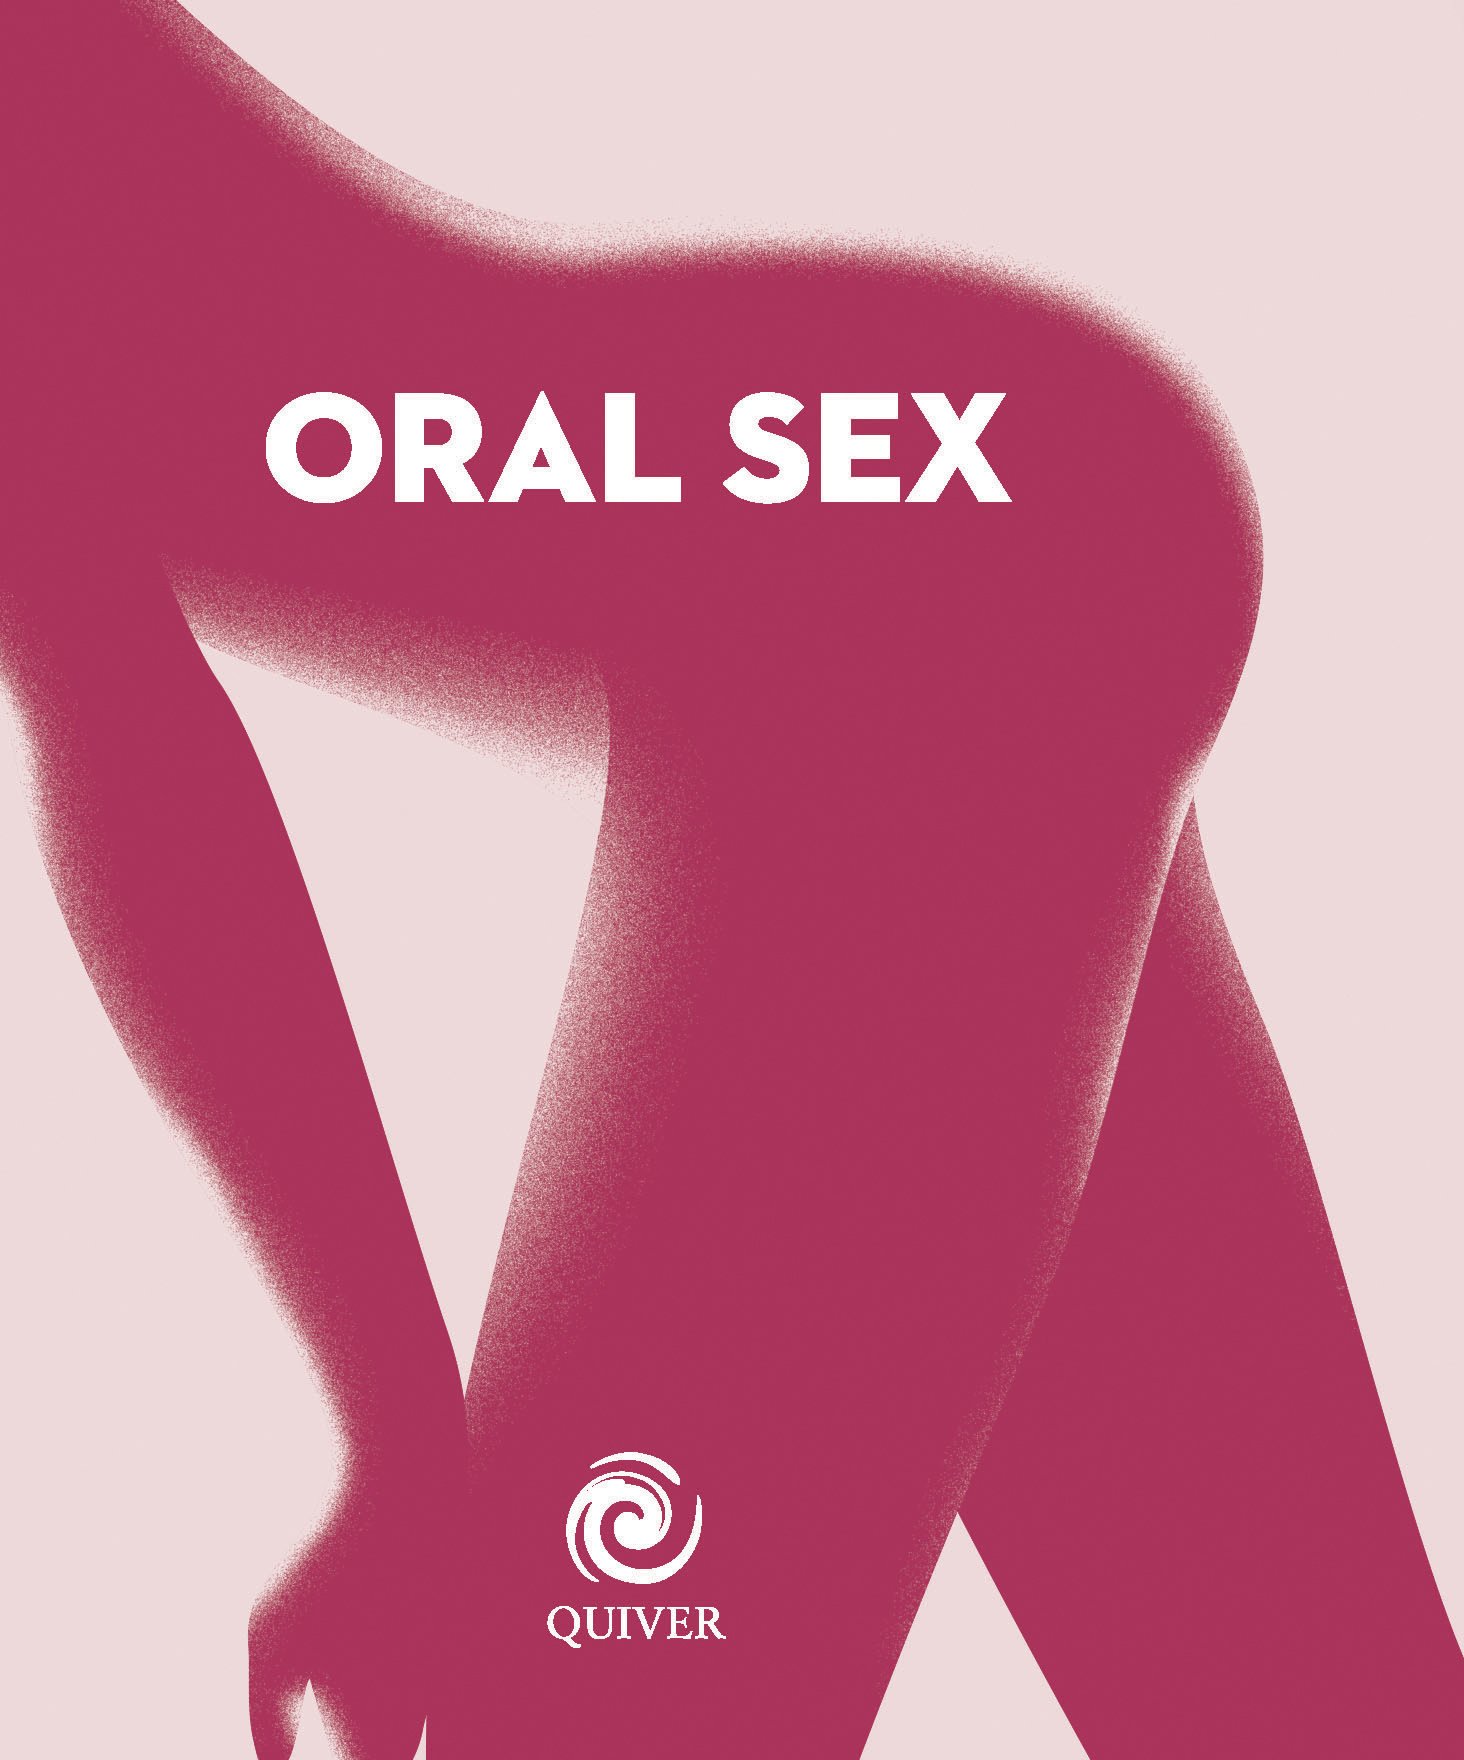 oral sex techniques pdf